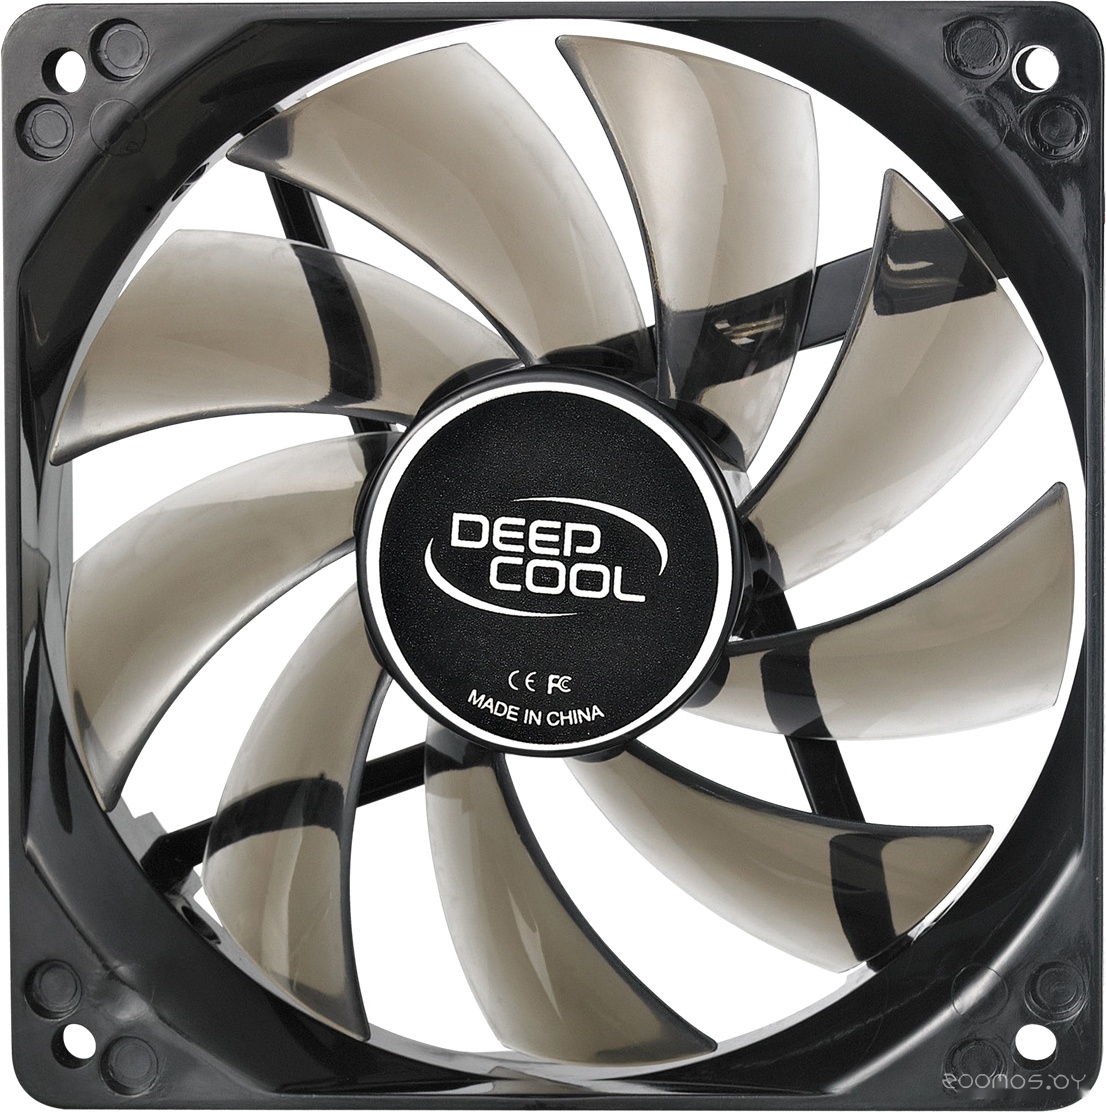    Deepcool Wind Blade 120 [DP-FLED-WB120]     